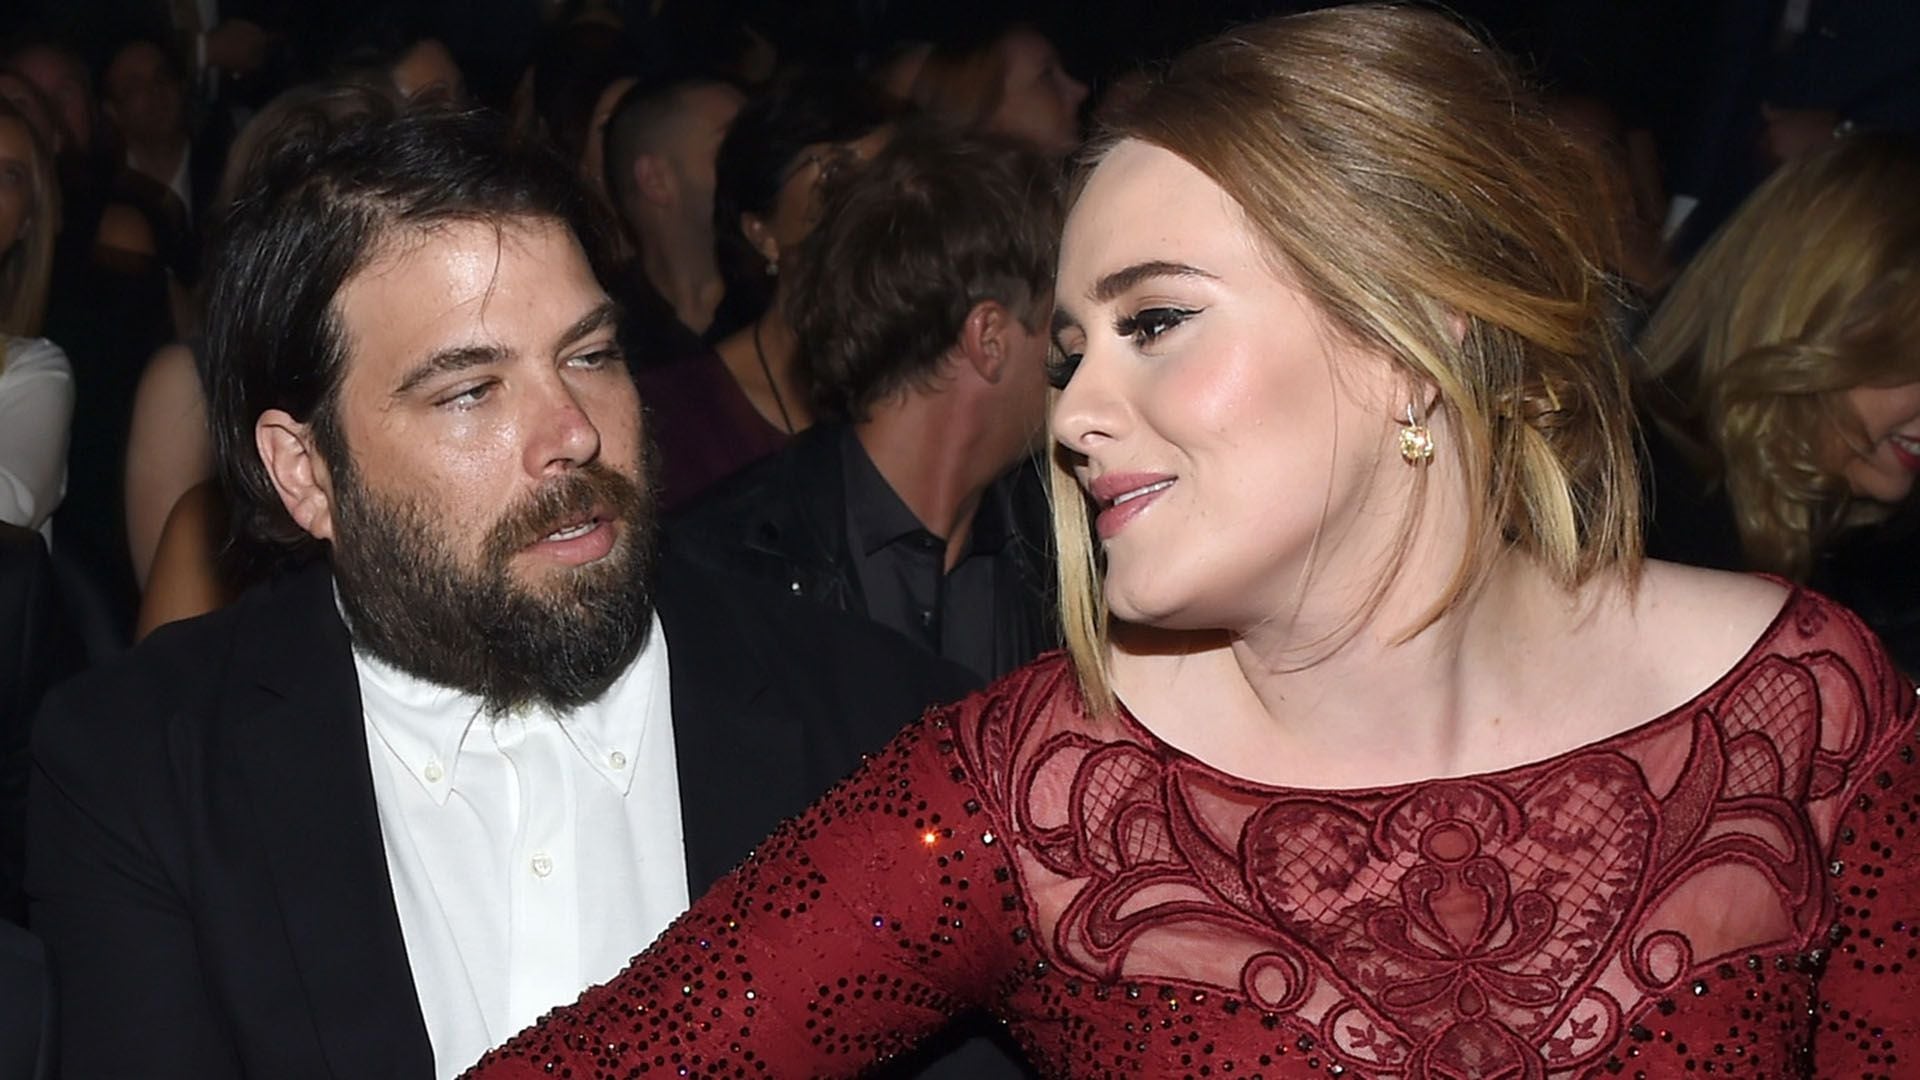 La relación de Adele con Simon terminó en Abril de 2019 y Adele fue la encargada de solicitar formalmente el divorcio en Septiembre de ese mismo año. (Photo by Larry BUSACCA / GETTY IMAGES NORTH AMERICA / AFP)